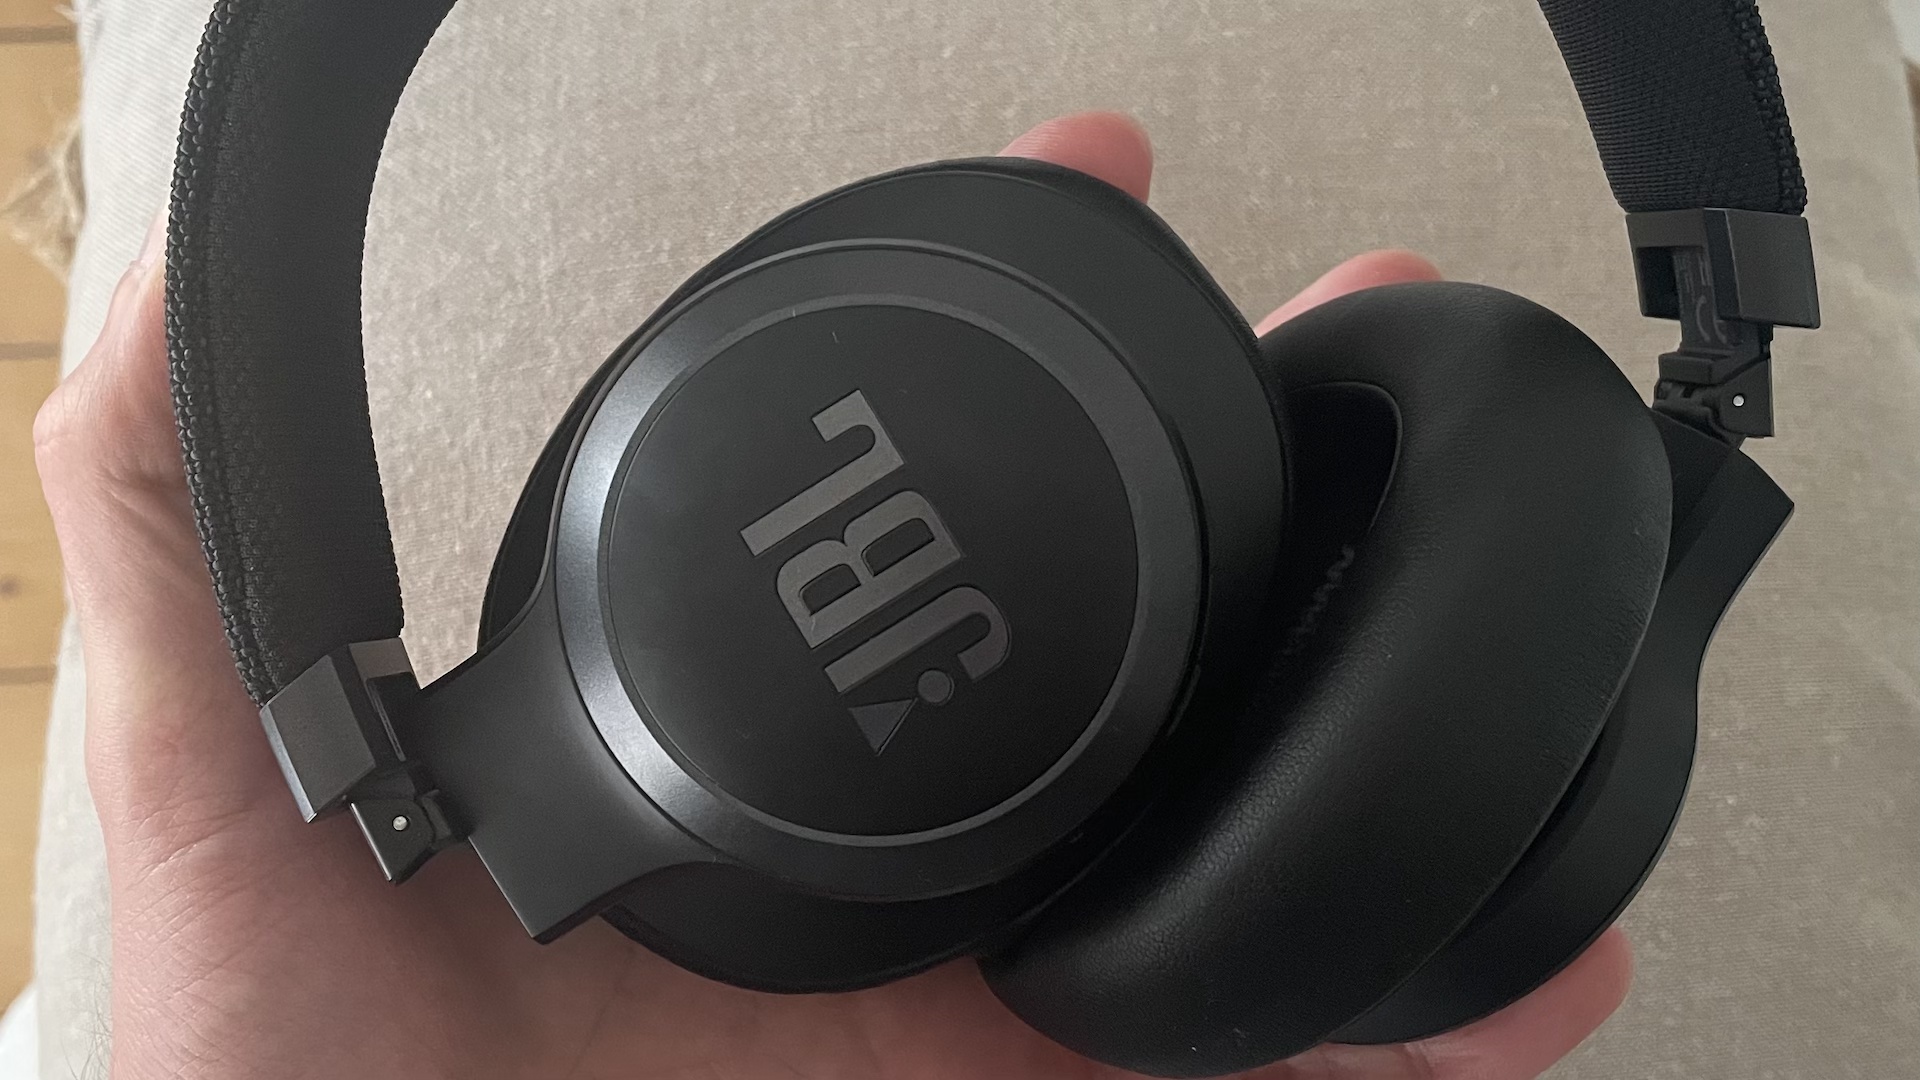 JBL LIVE 460NC - casque sans fil avec micro - à réduction de bruit - noir  Pas Cher